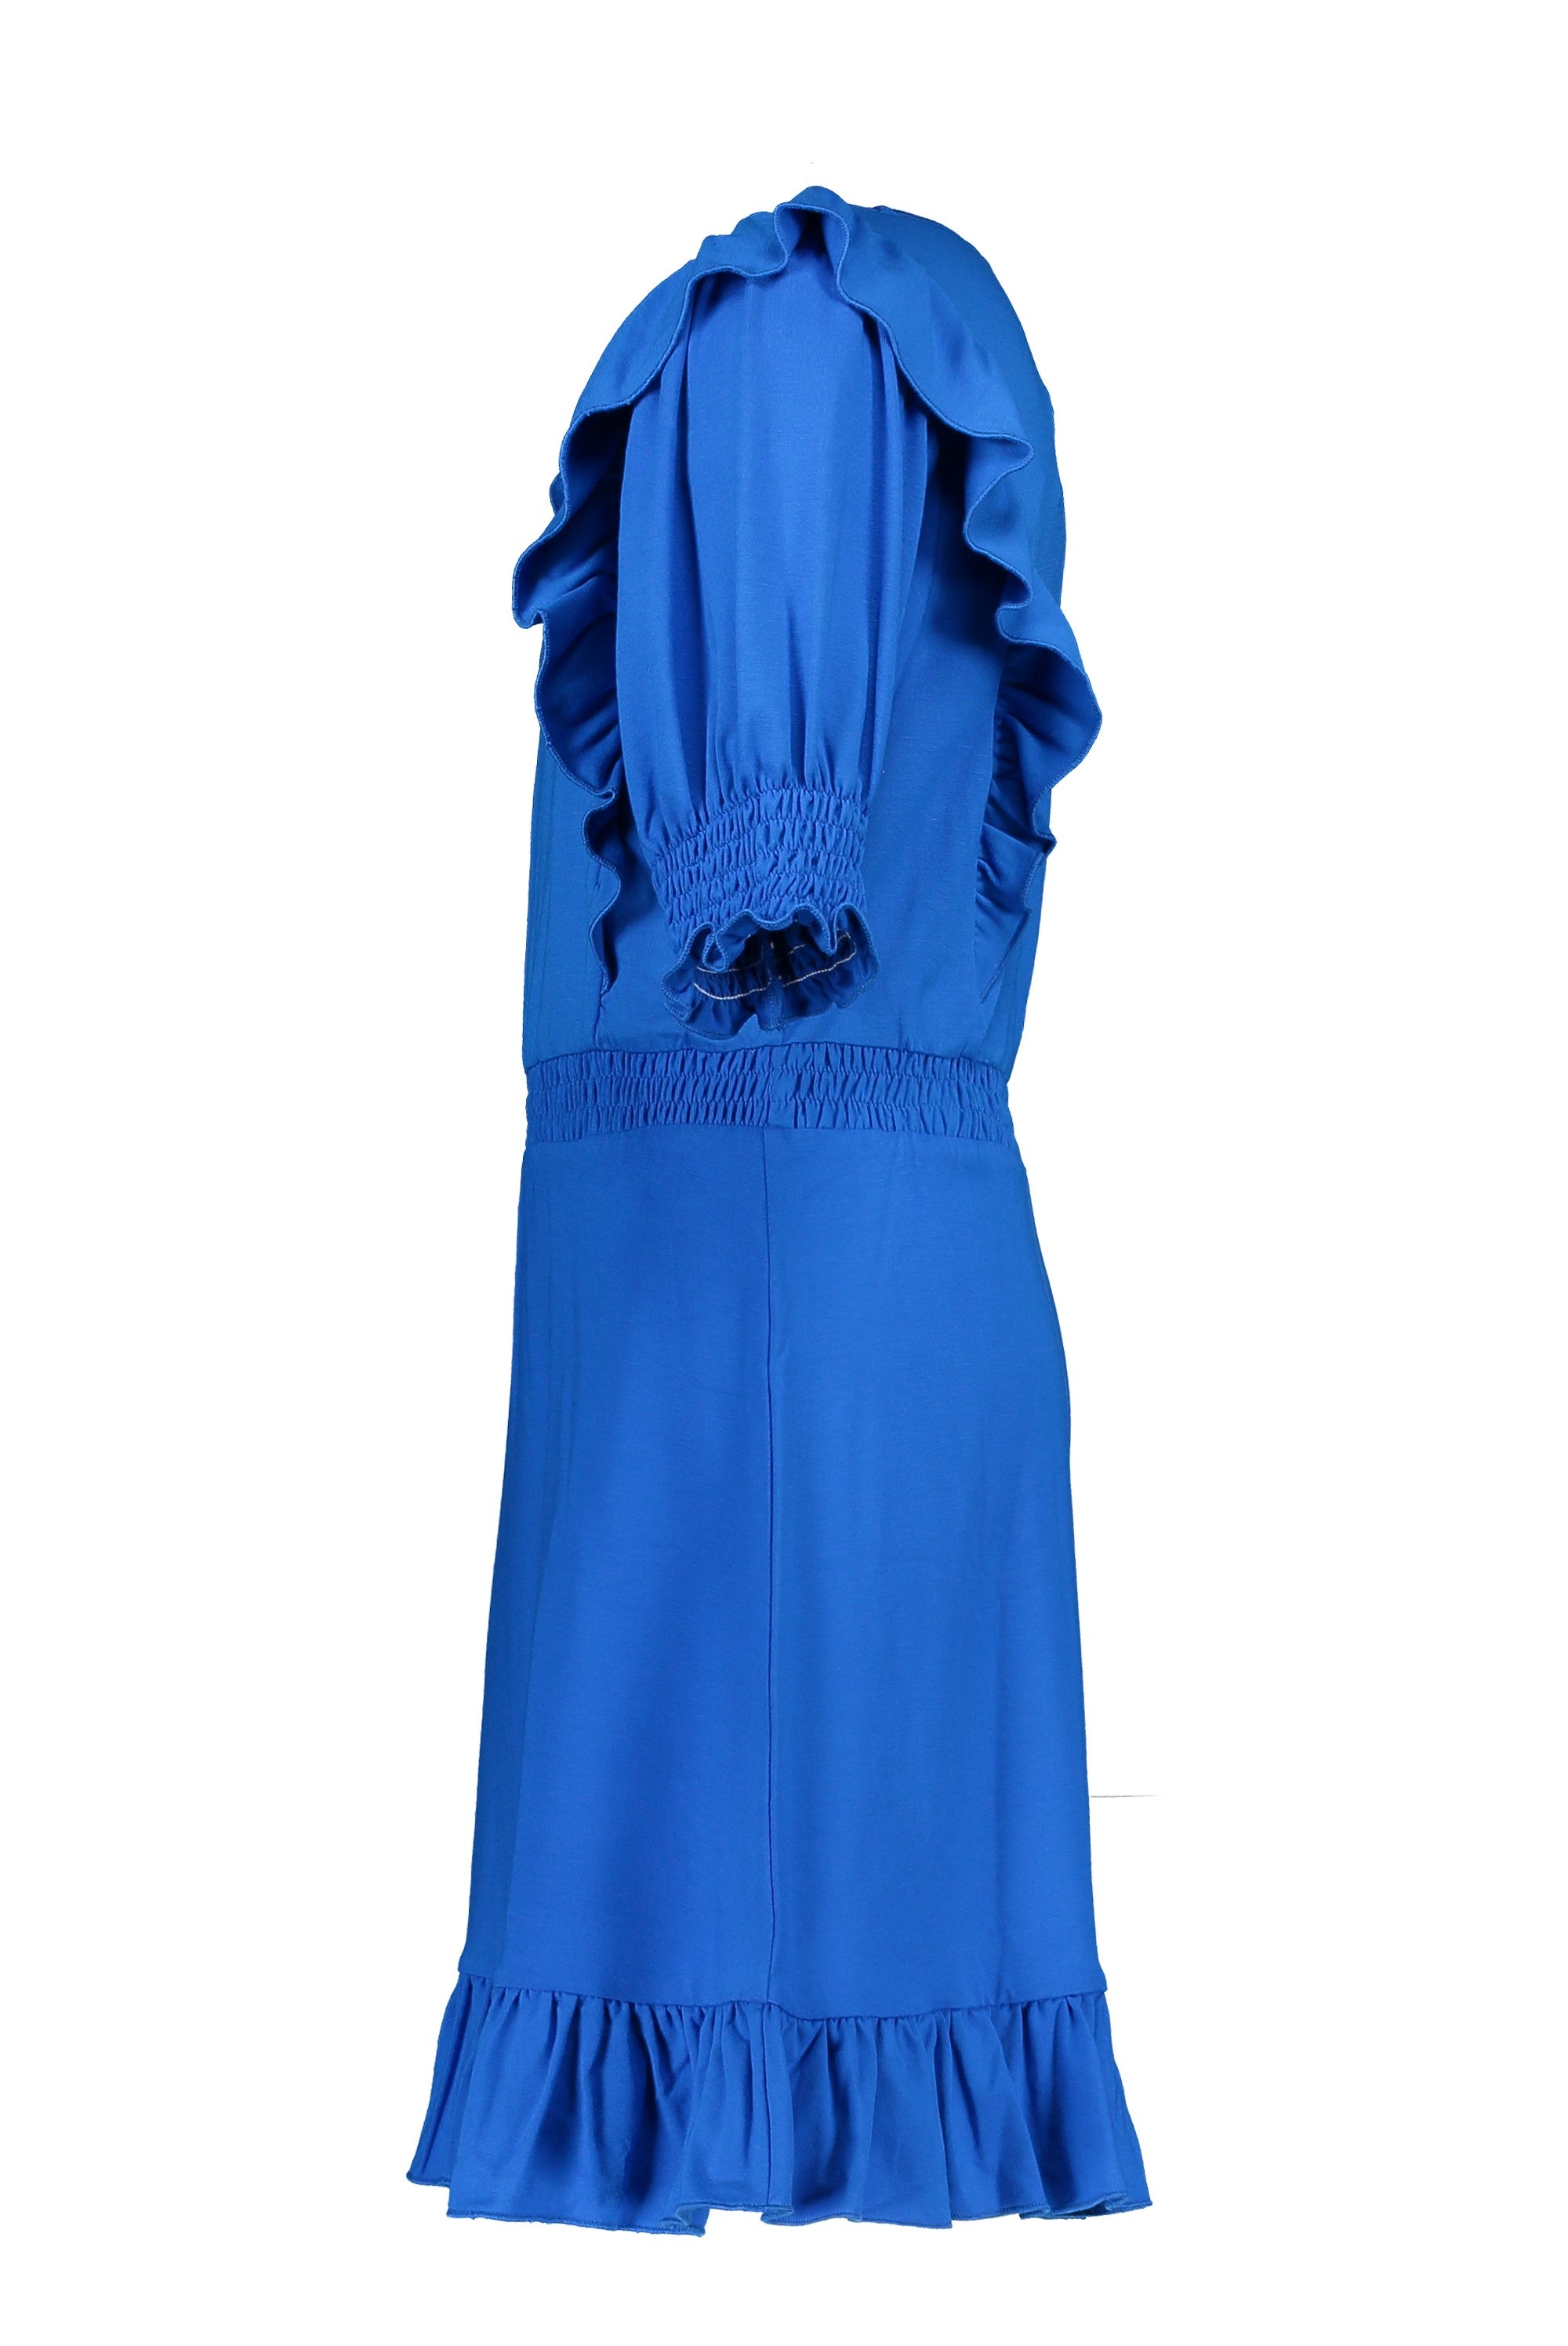 Meisjes Slub Jersey Dress van Like Flo in de kleur Cobalt in maat 152.